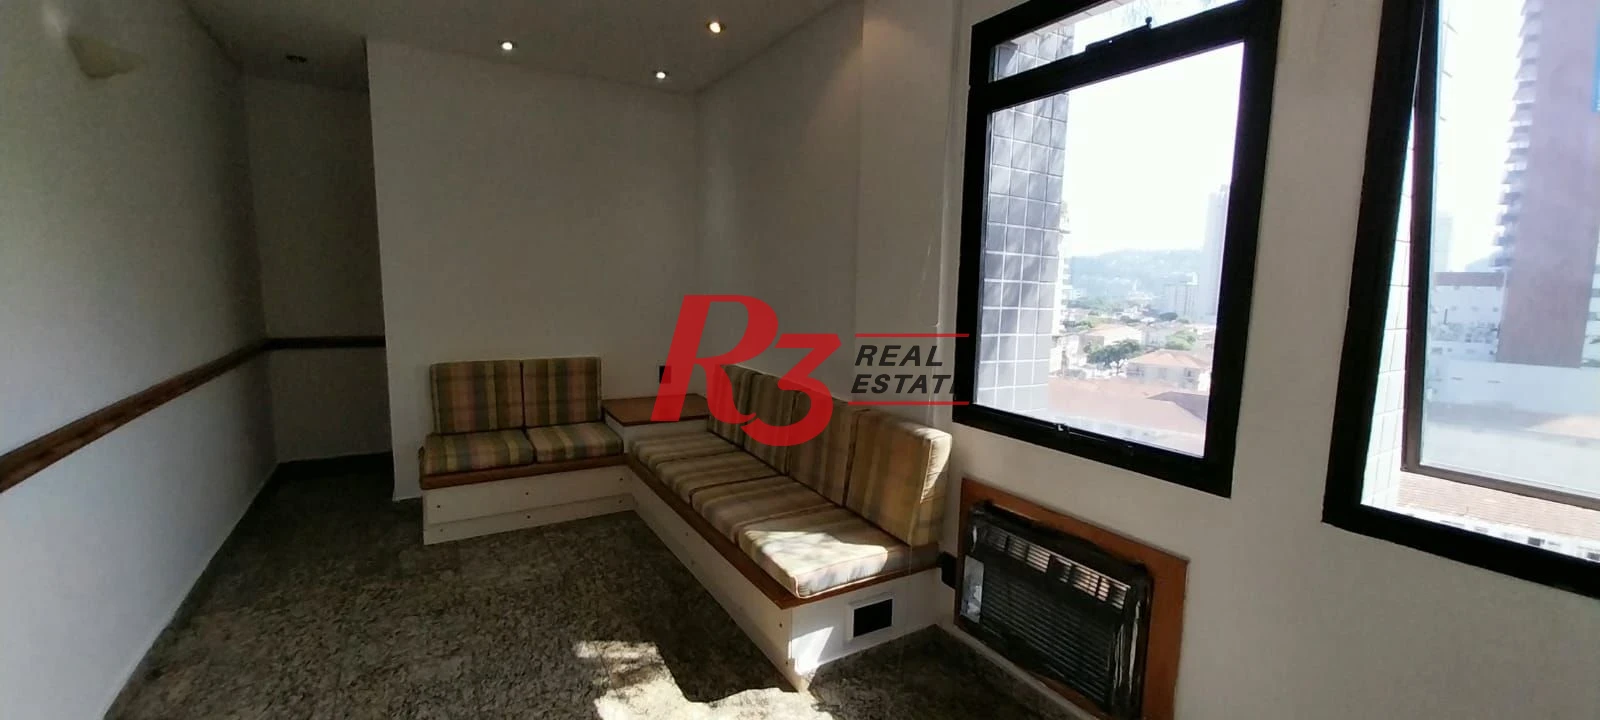 Sala à venda, 55 m² por R$ 375.000,00 - Campo Grande - Santos/SP